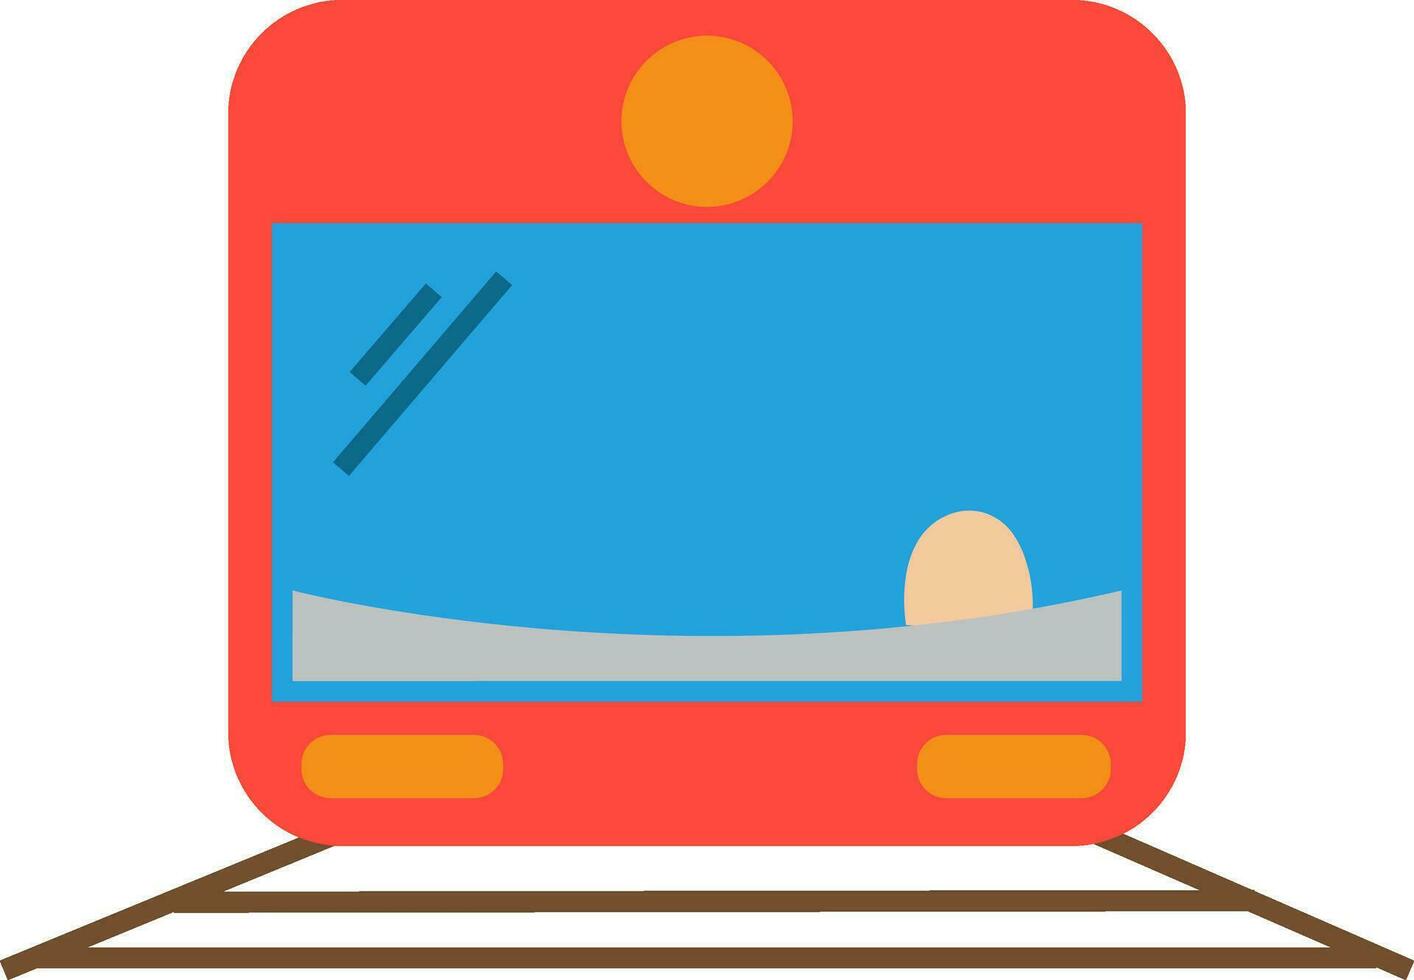 Train flat style illustration. vector